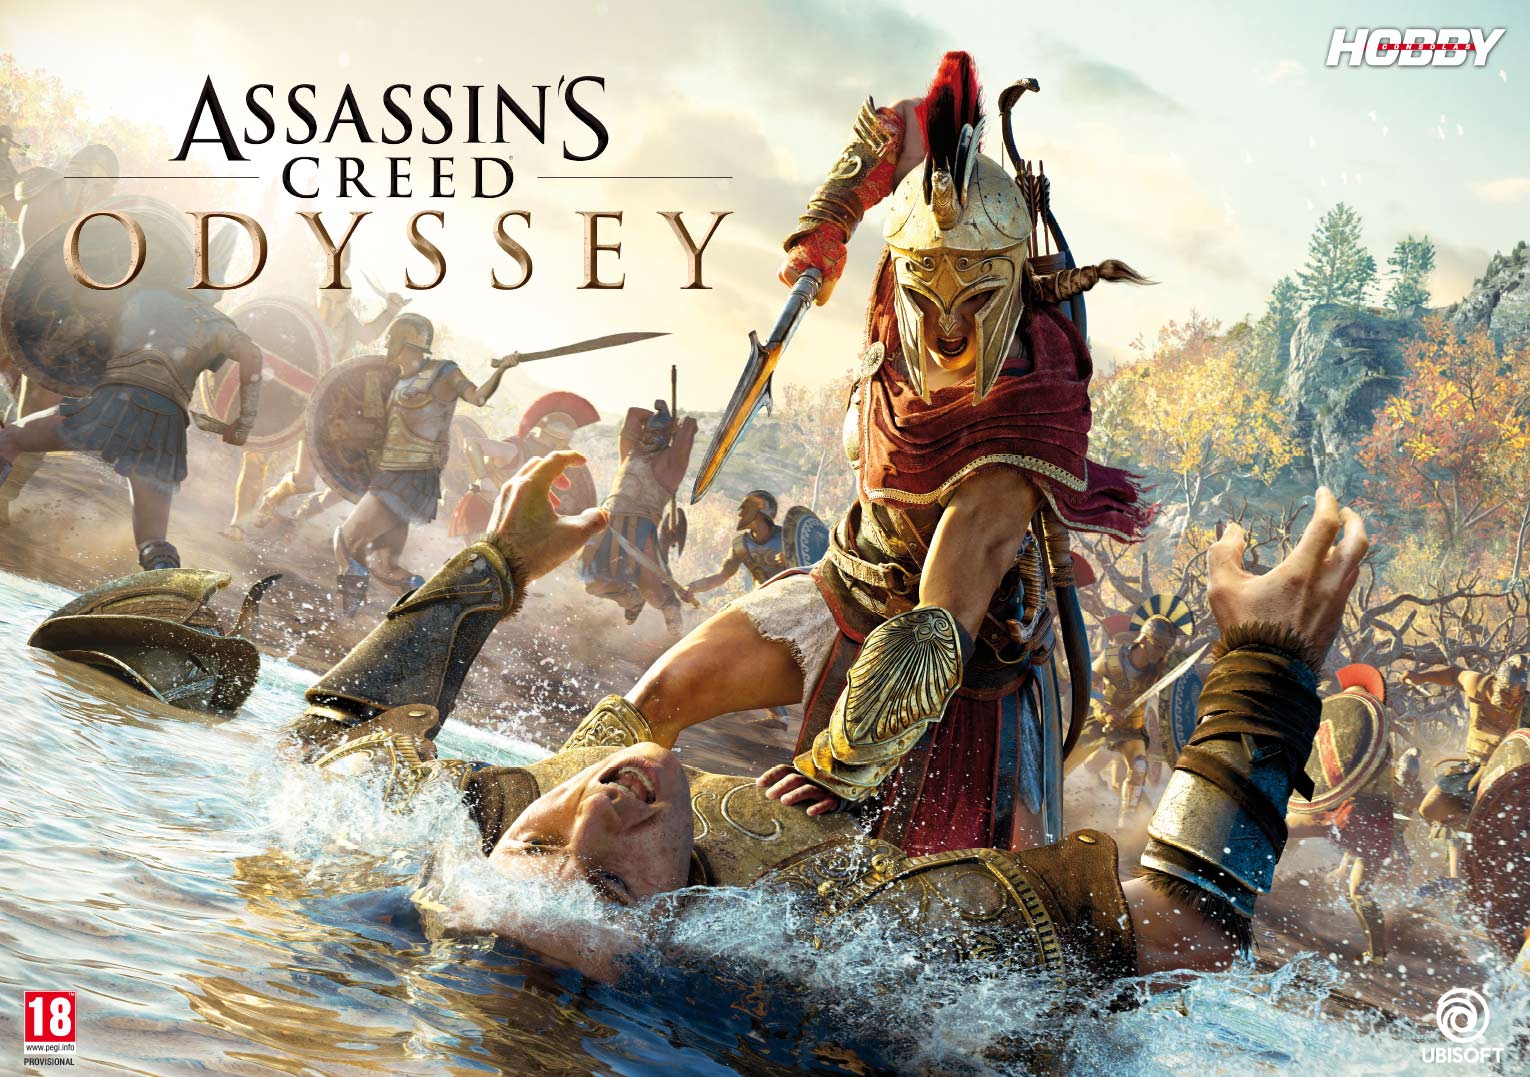 Hobby Consolas 327, a la venta con pósters de Assassin’s Creed Odyssey